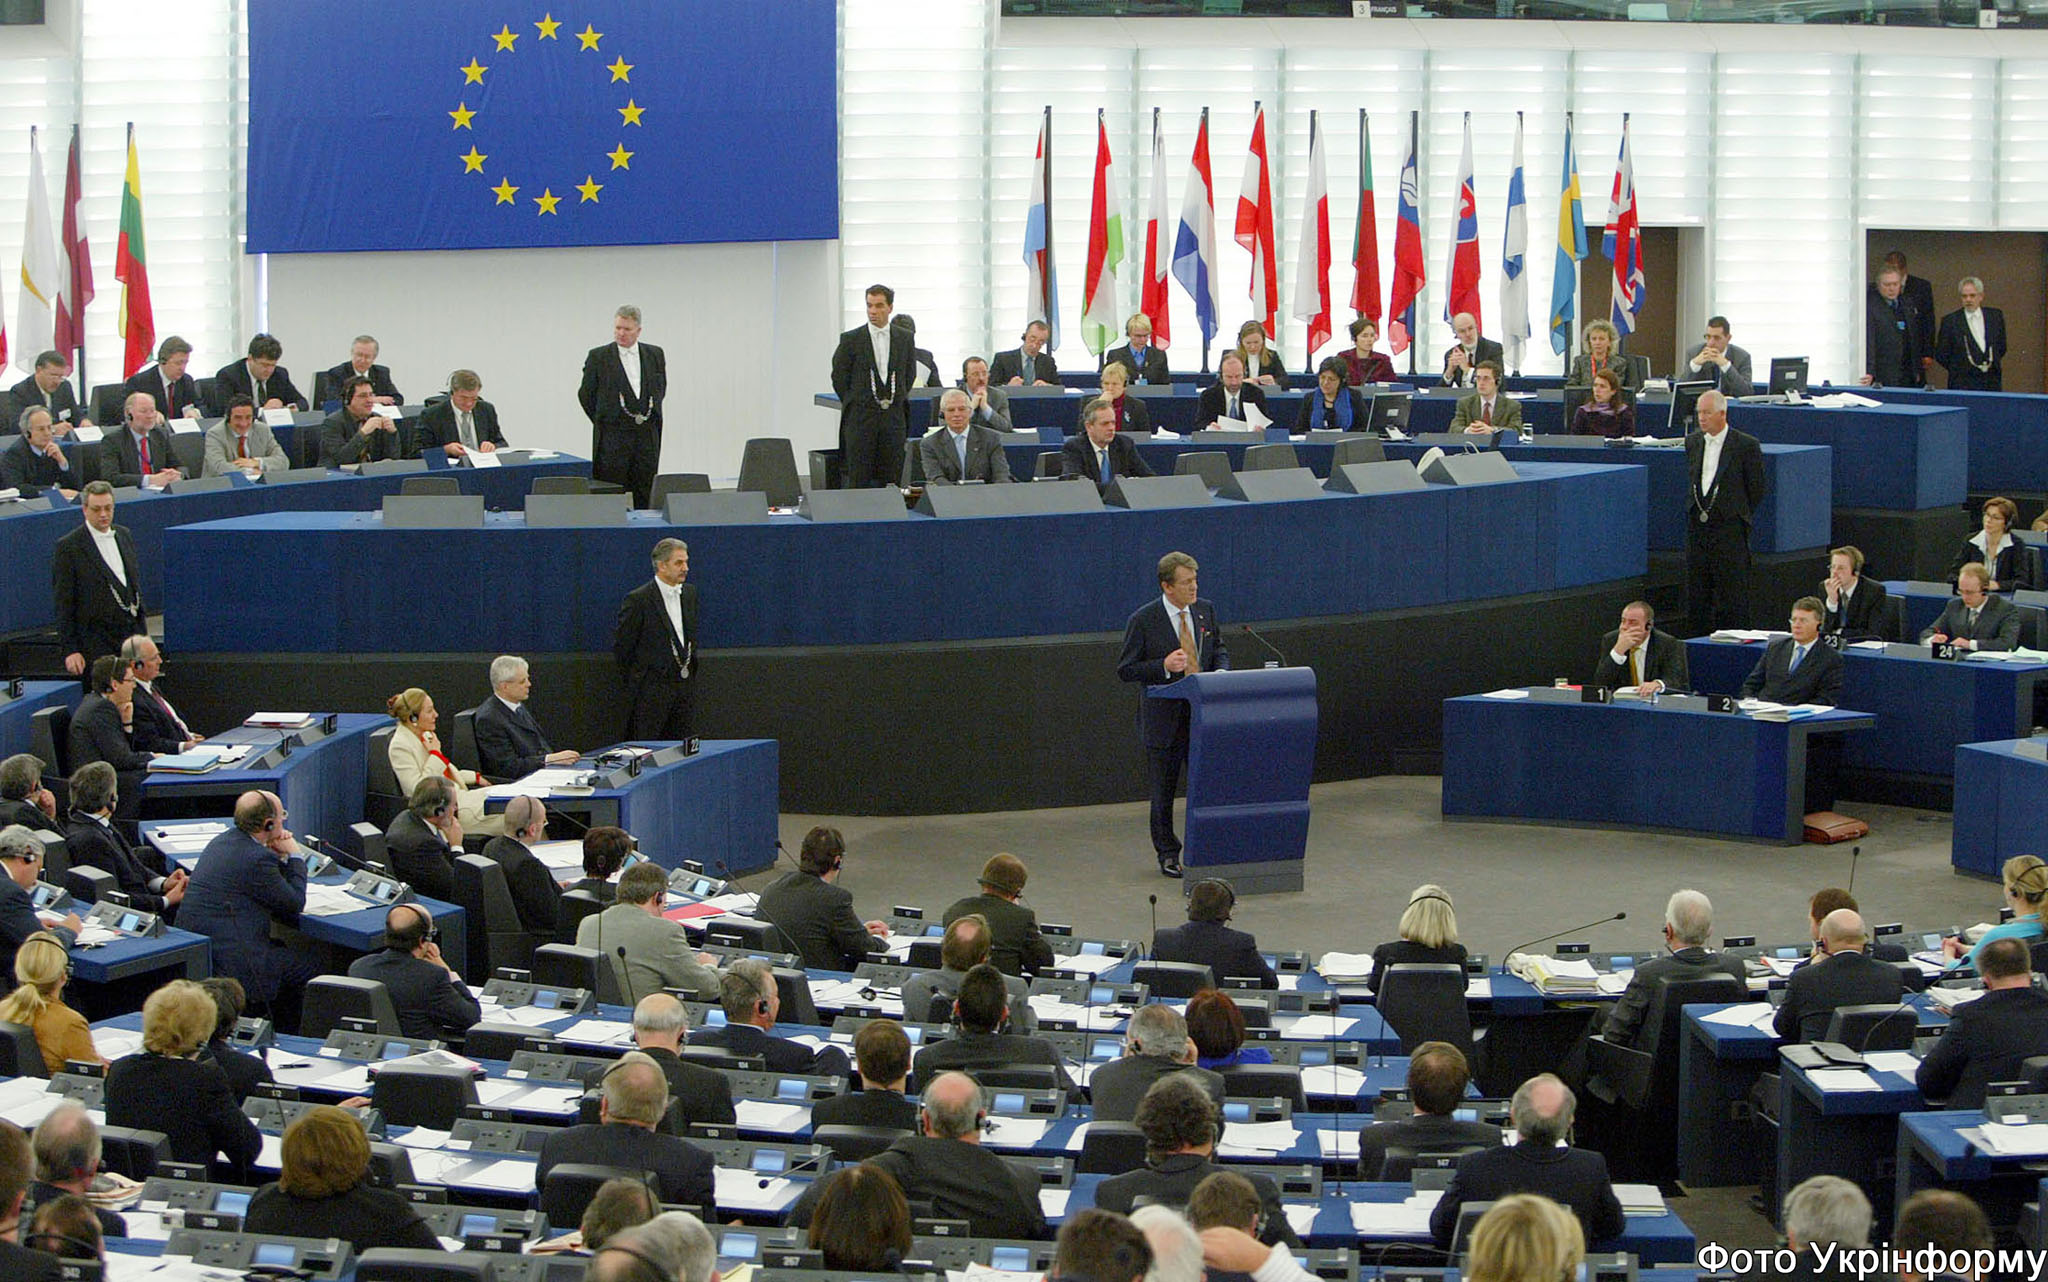 البرلمان الاوروبي يطالب بتقاسم عبء المهاجرين غير الشرعيين